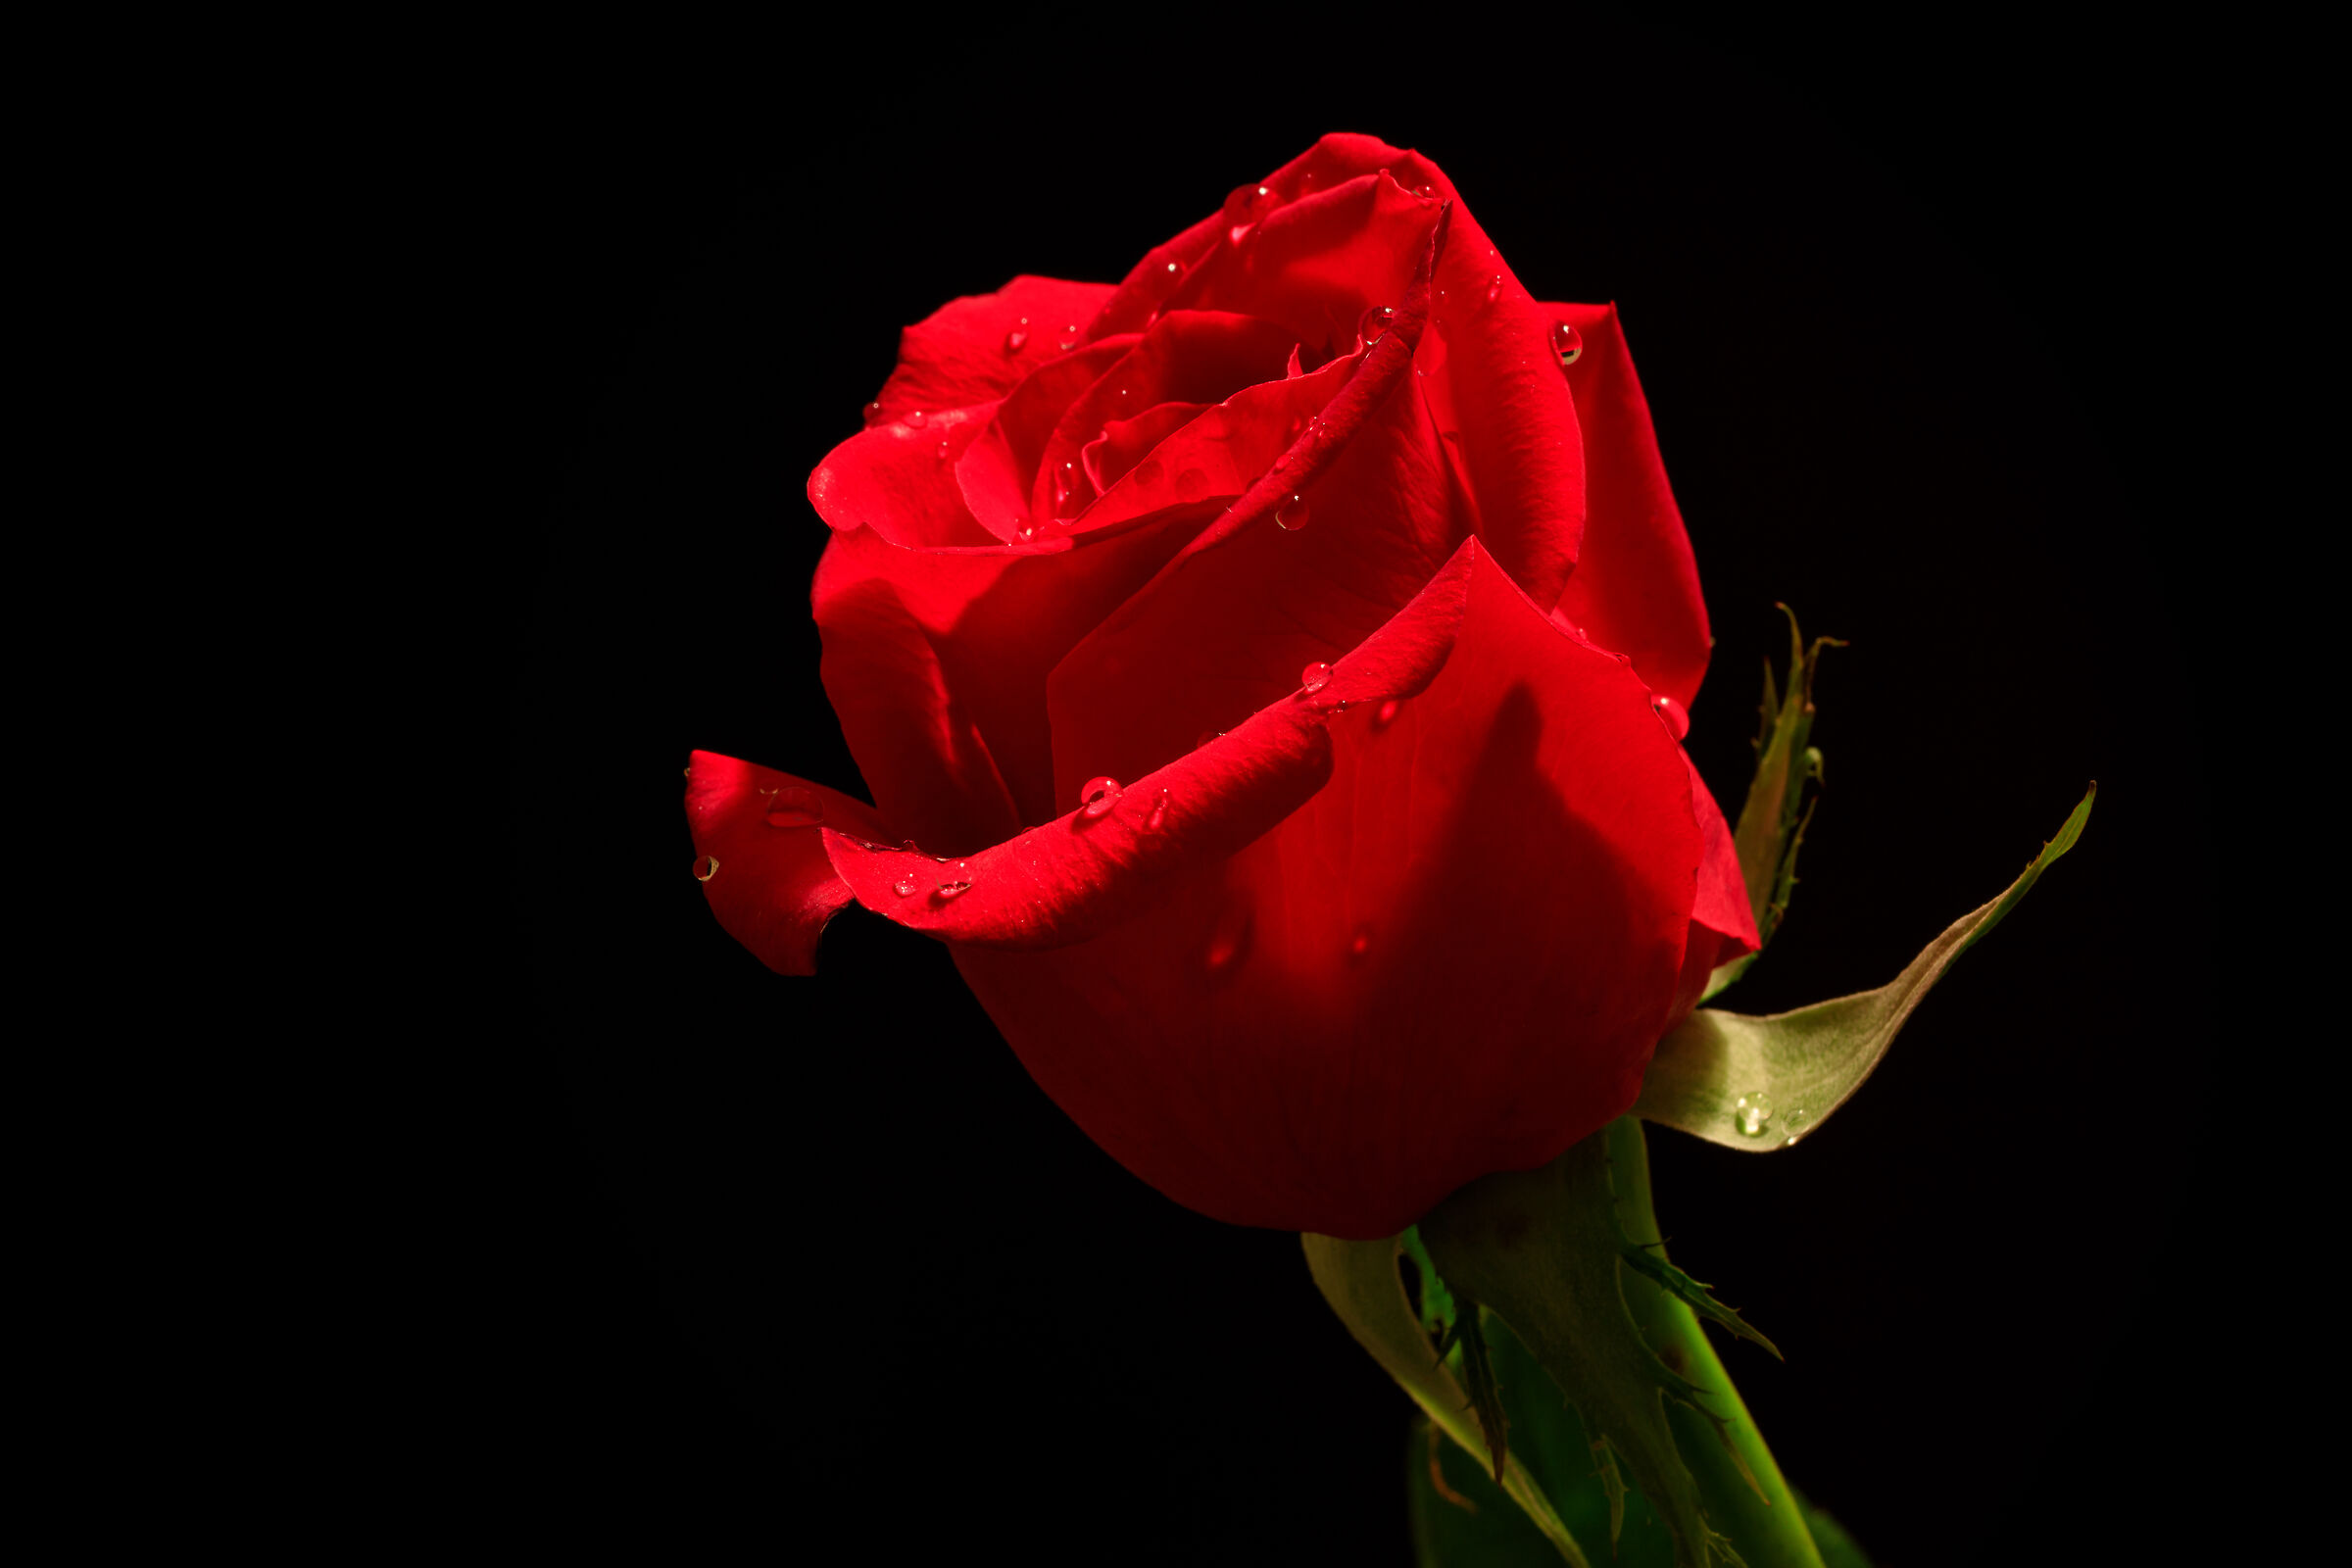 La rosa più bella sei tu...